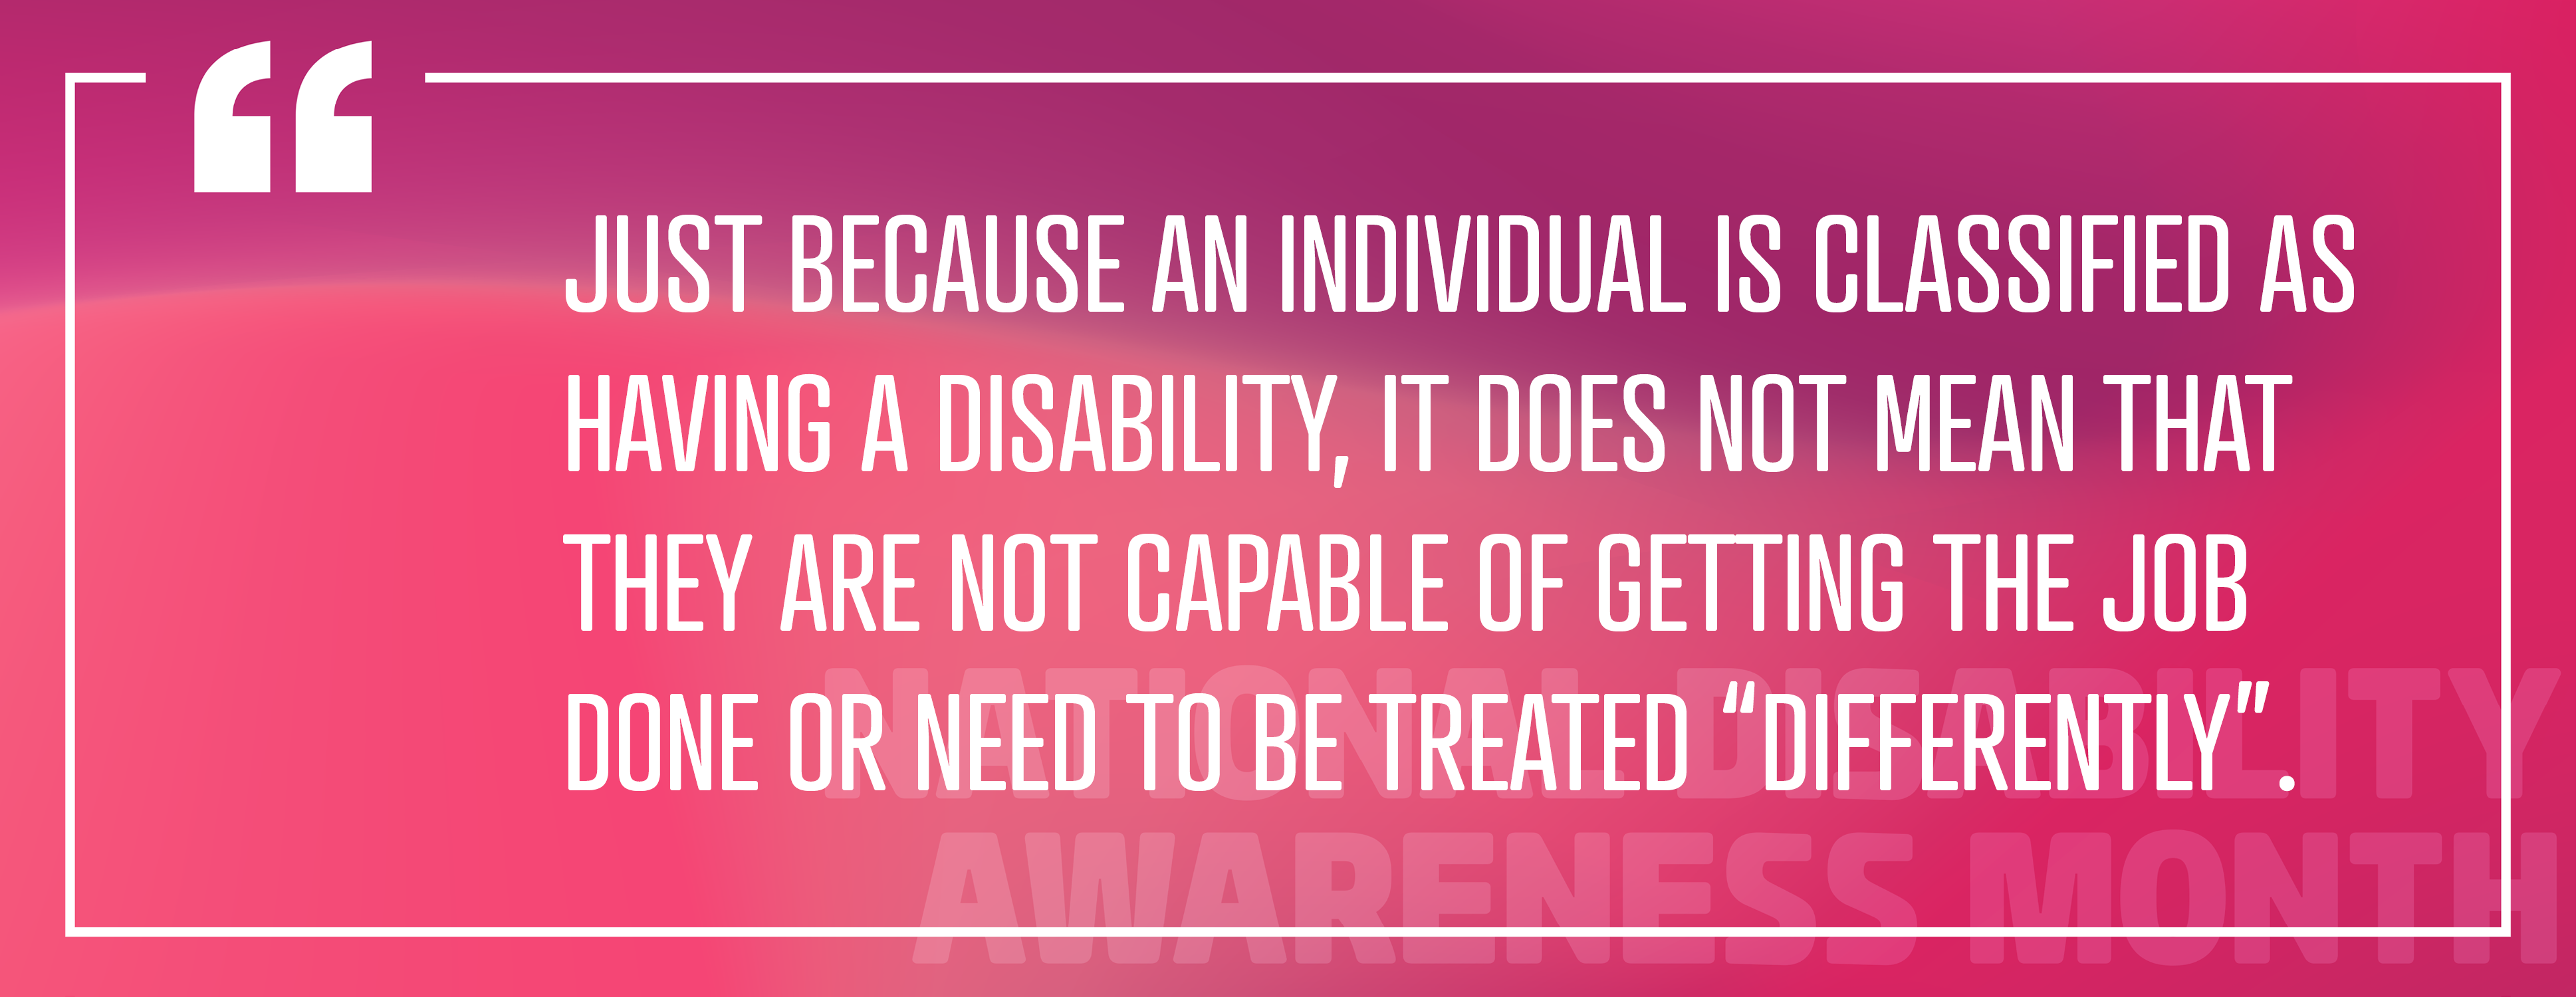 الصورة 4: "مجرد تصنيف الفرد على أنه يعاني من إعاقة، فهذا لا يعني أنه غير قادر على إنجاز المهمة أو يحتاج إلى معاملة "بشكل مختلف"."